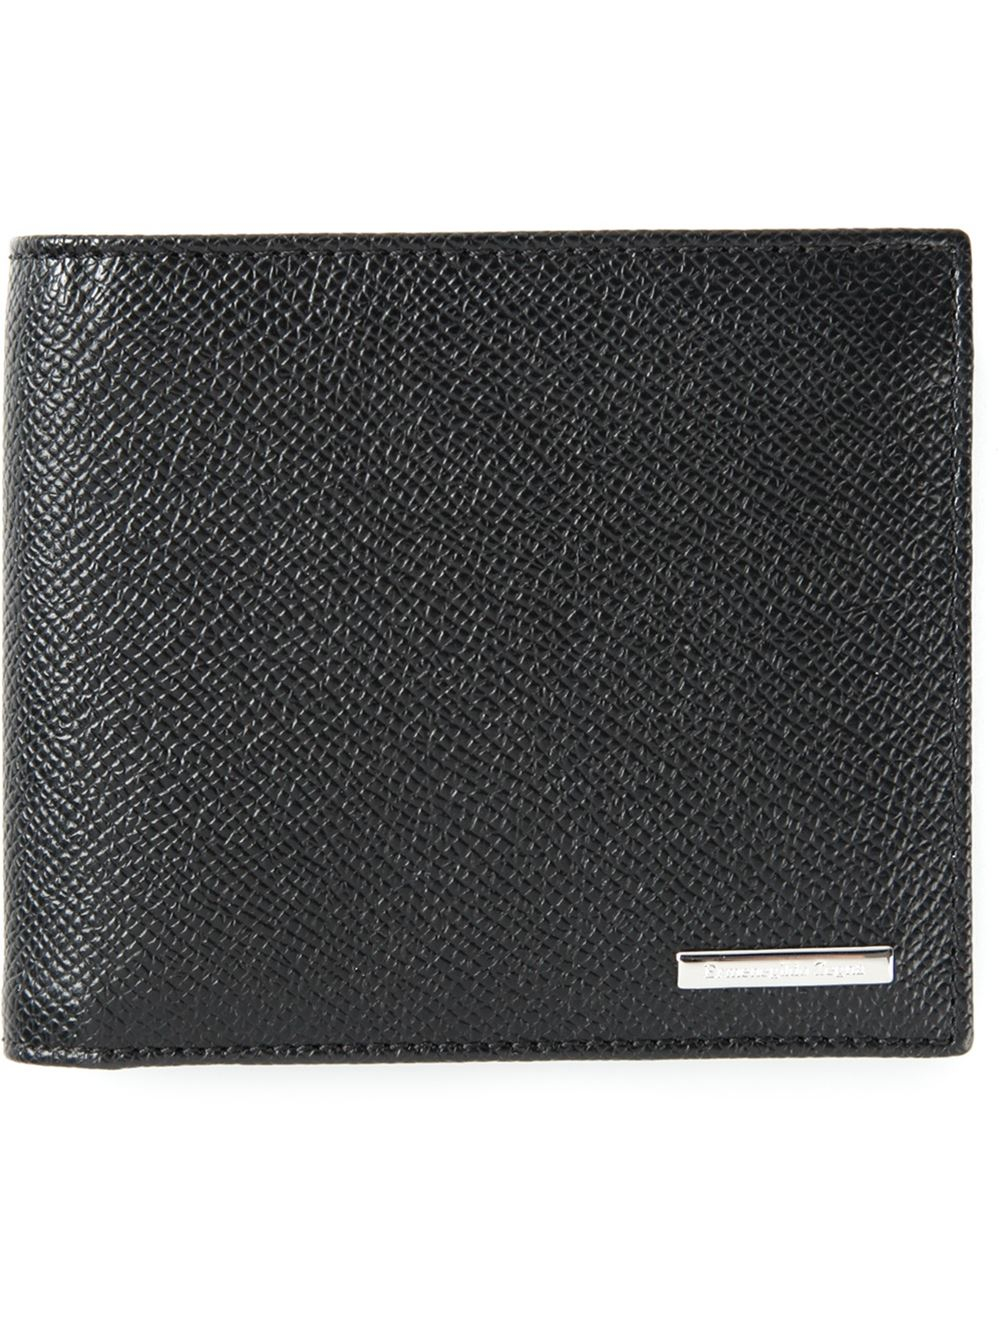 Ermenegildo Zegna Classic Billfold Wallet in Black for Men | Lyst